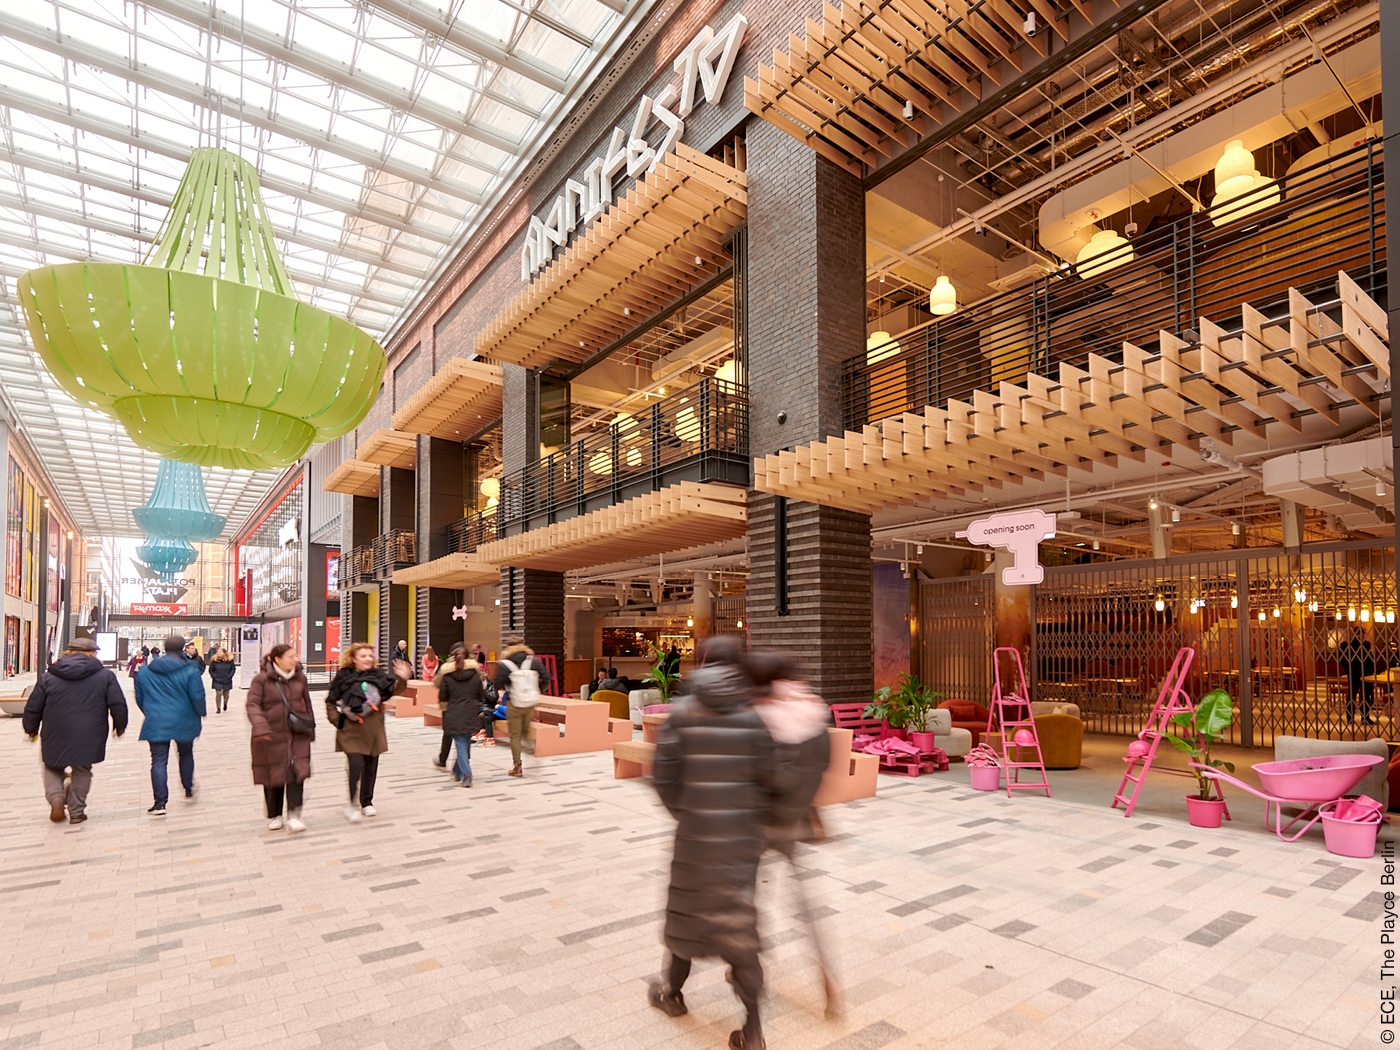 Mall des Shopping Centers "The Playce" nach dem Umbau mit manifesto Market